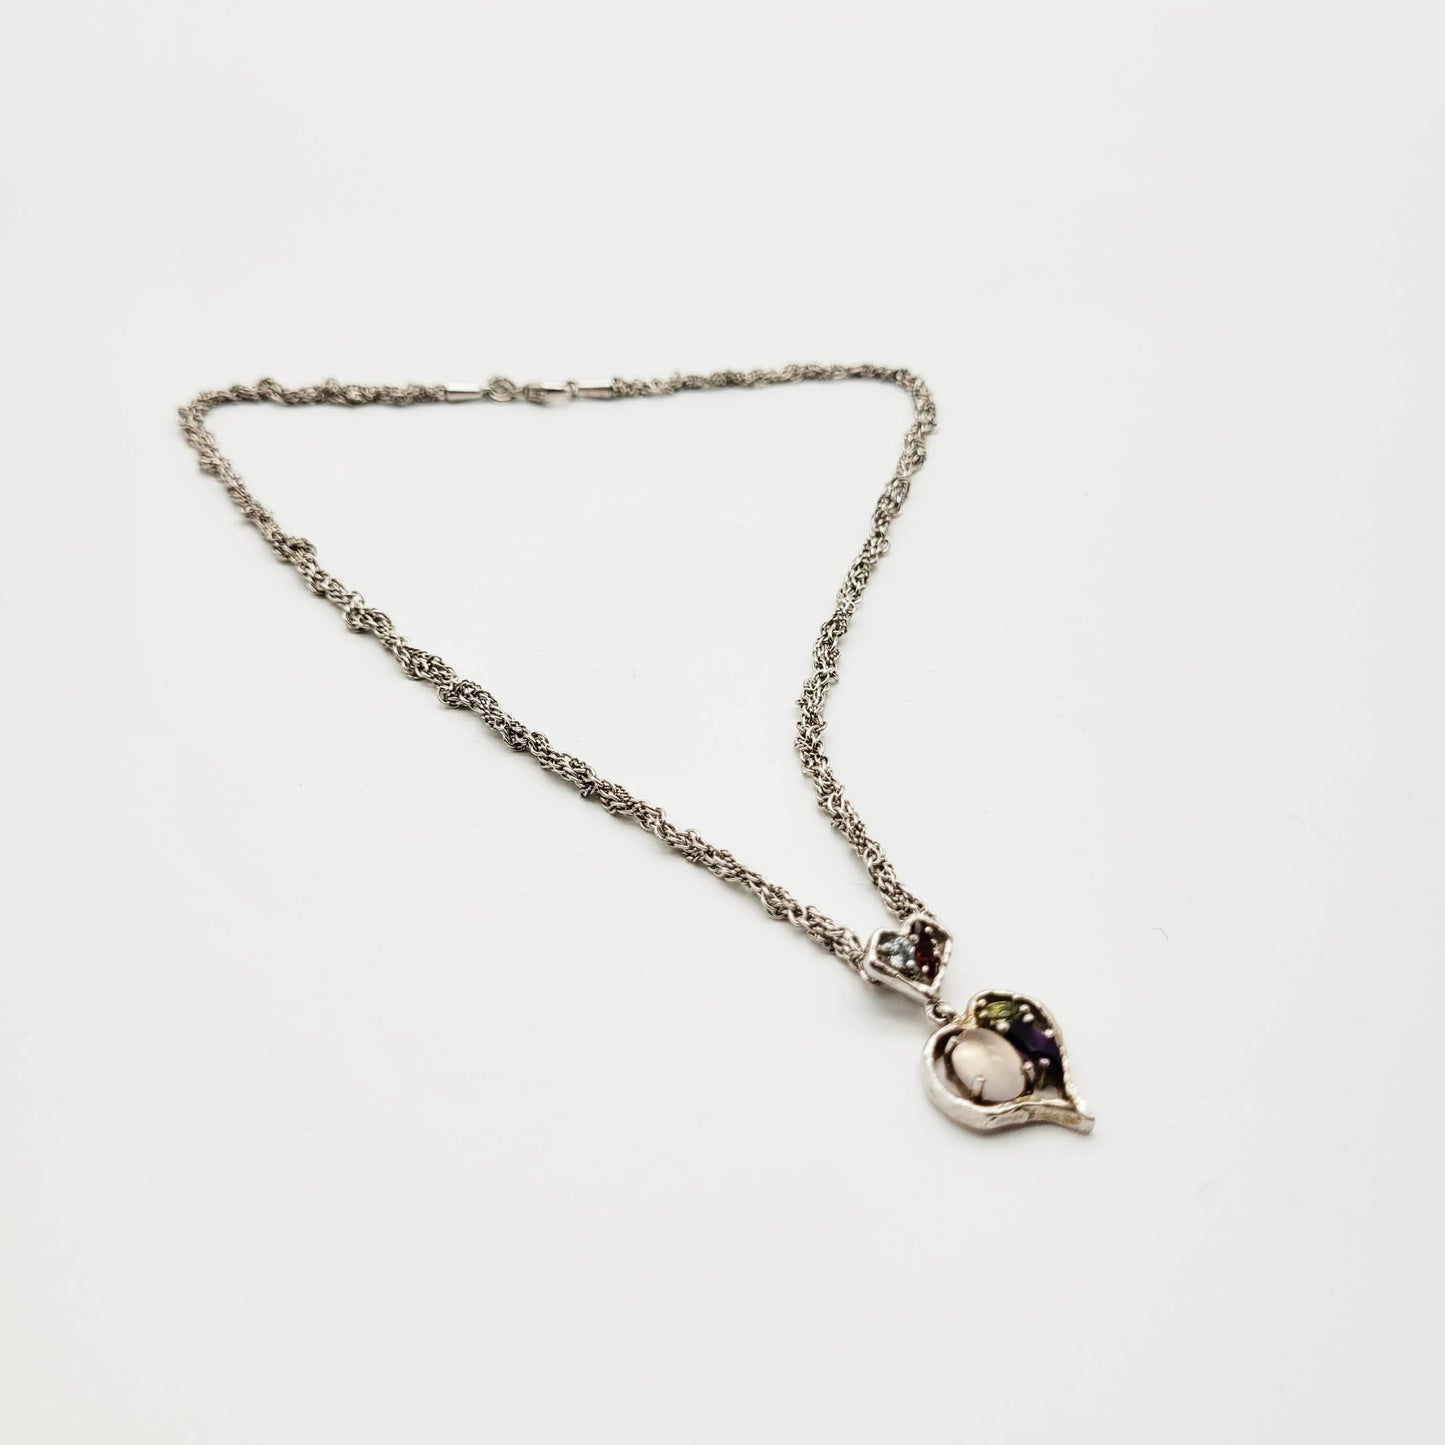 Vintage silver necklace Christian Lacroix